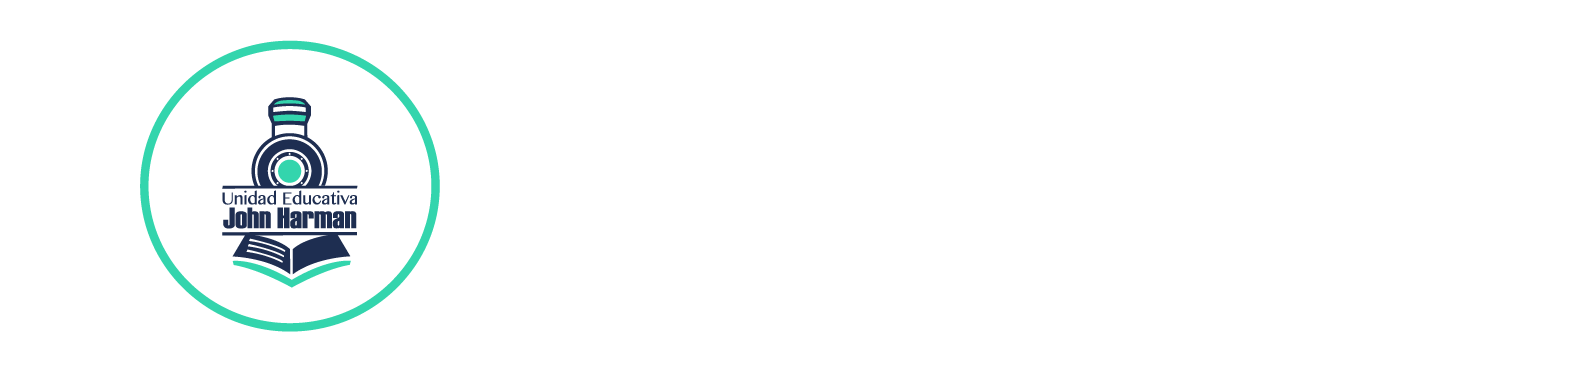 Logo SGA